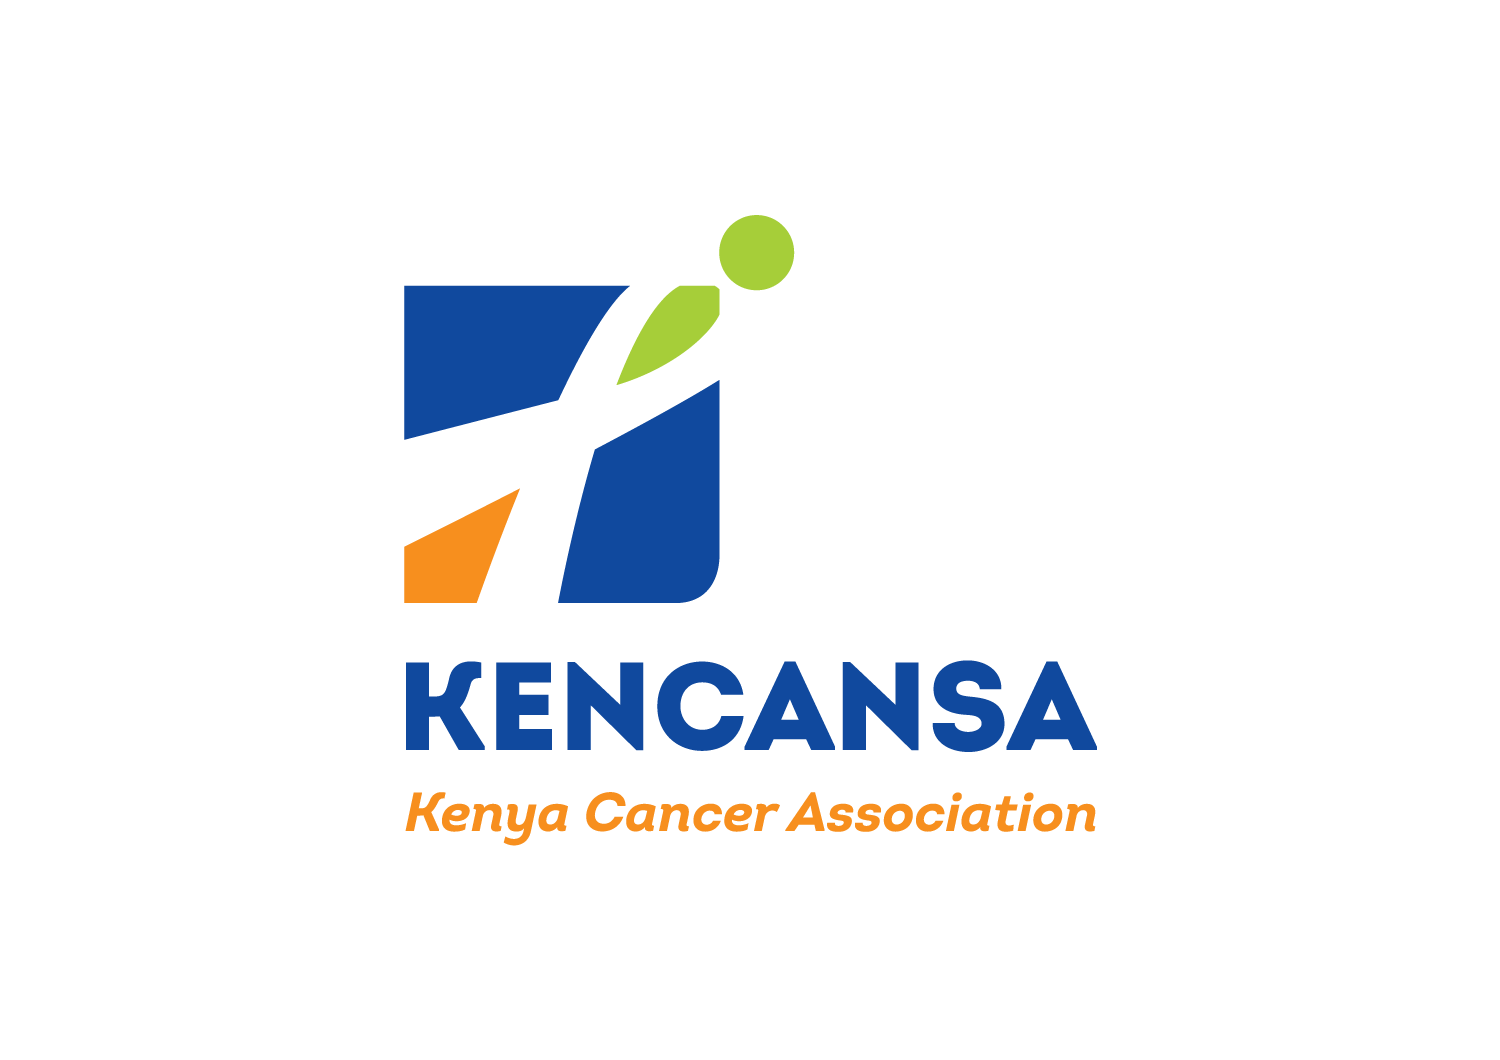 Kenya Cancer Association (KENCANSA)